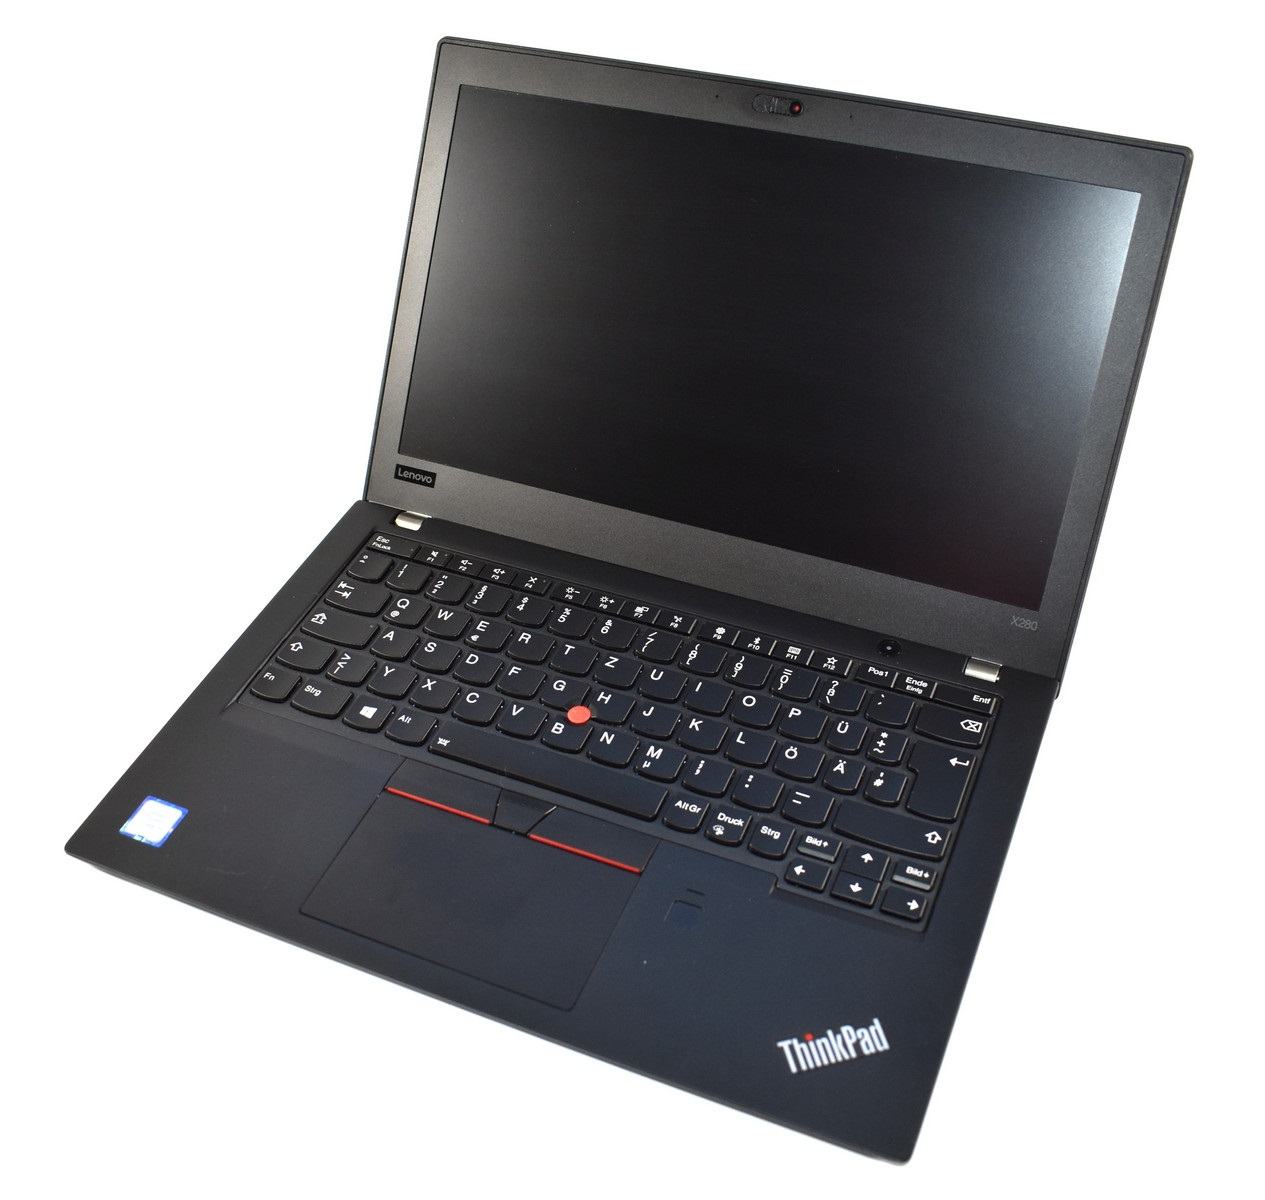 ThinkPad X280 sản xuất năm nào?